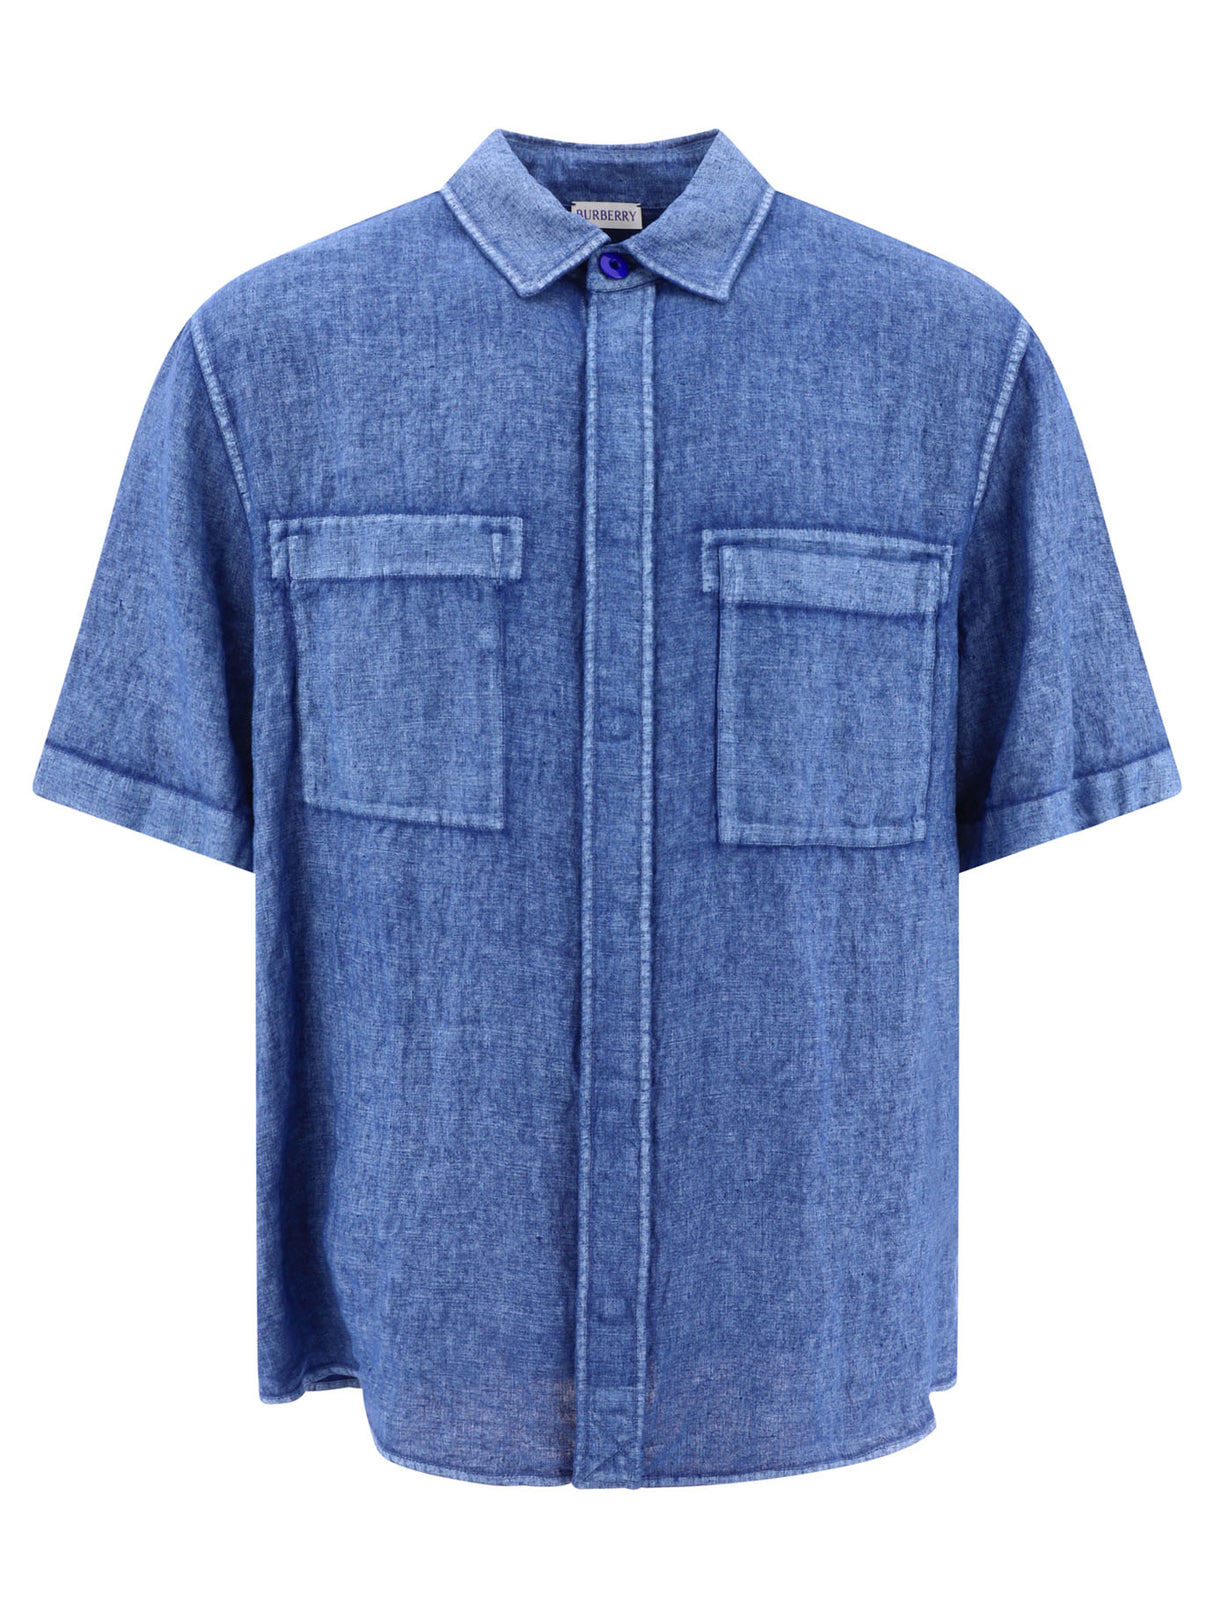 BURBERRY Light Blue Linen Shirt for Men - SS24 Collection